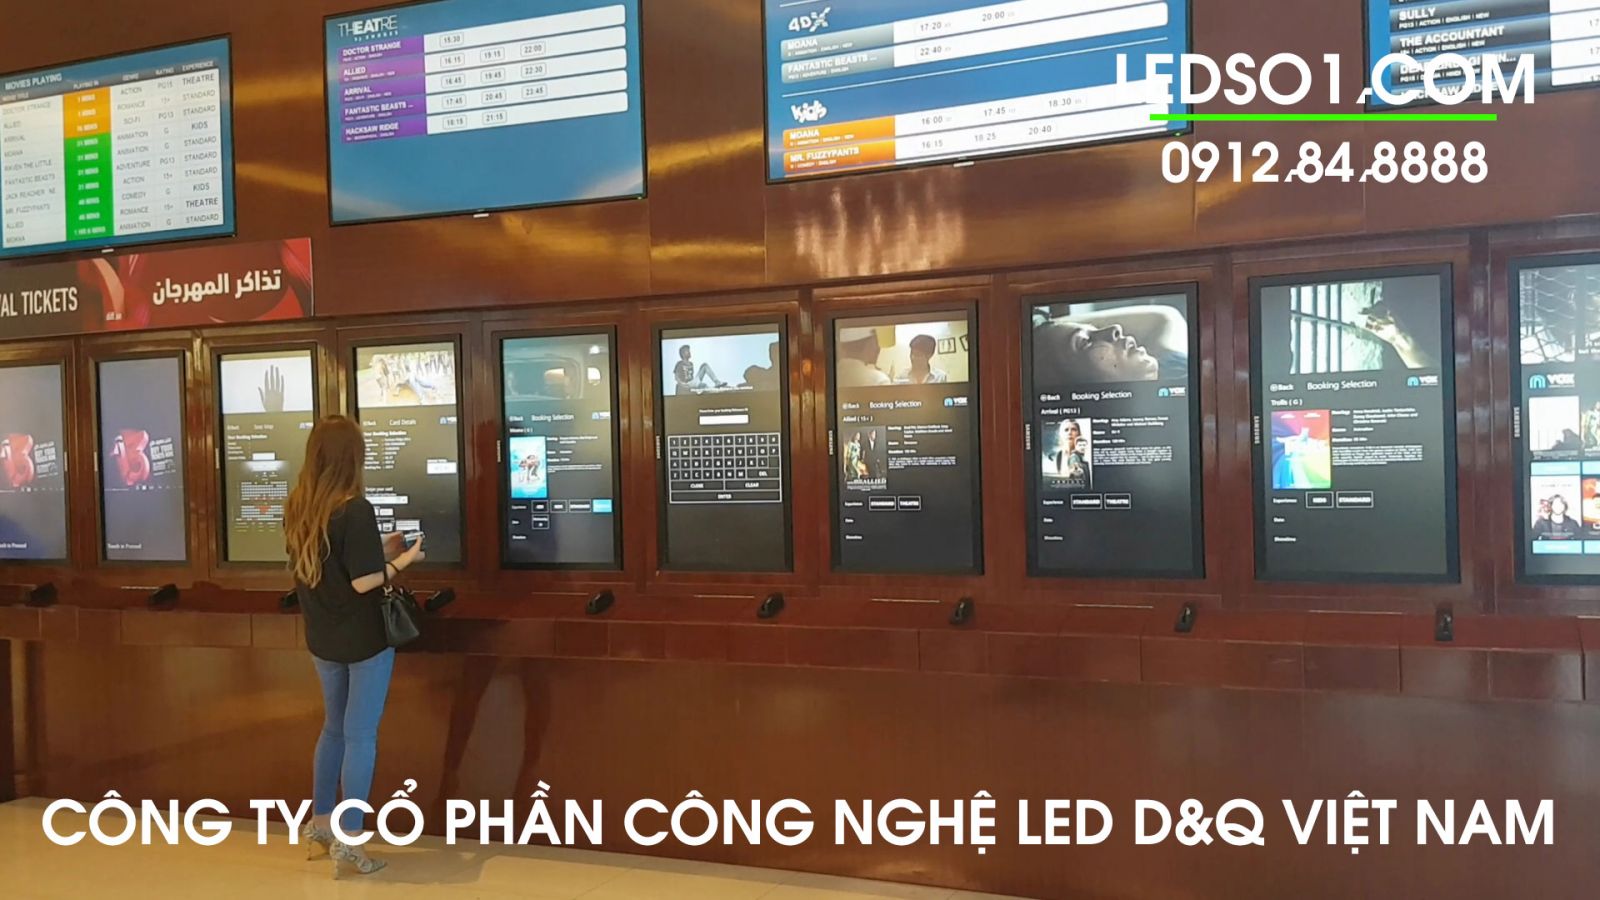 Khảo sát Màn hình LCD cảm ứng 43 inch treo tường tại DUBAI 2017